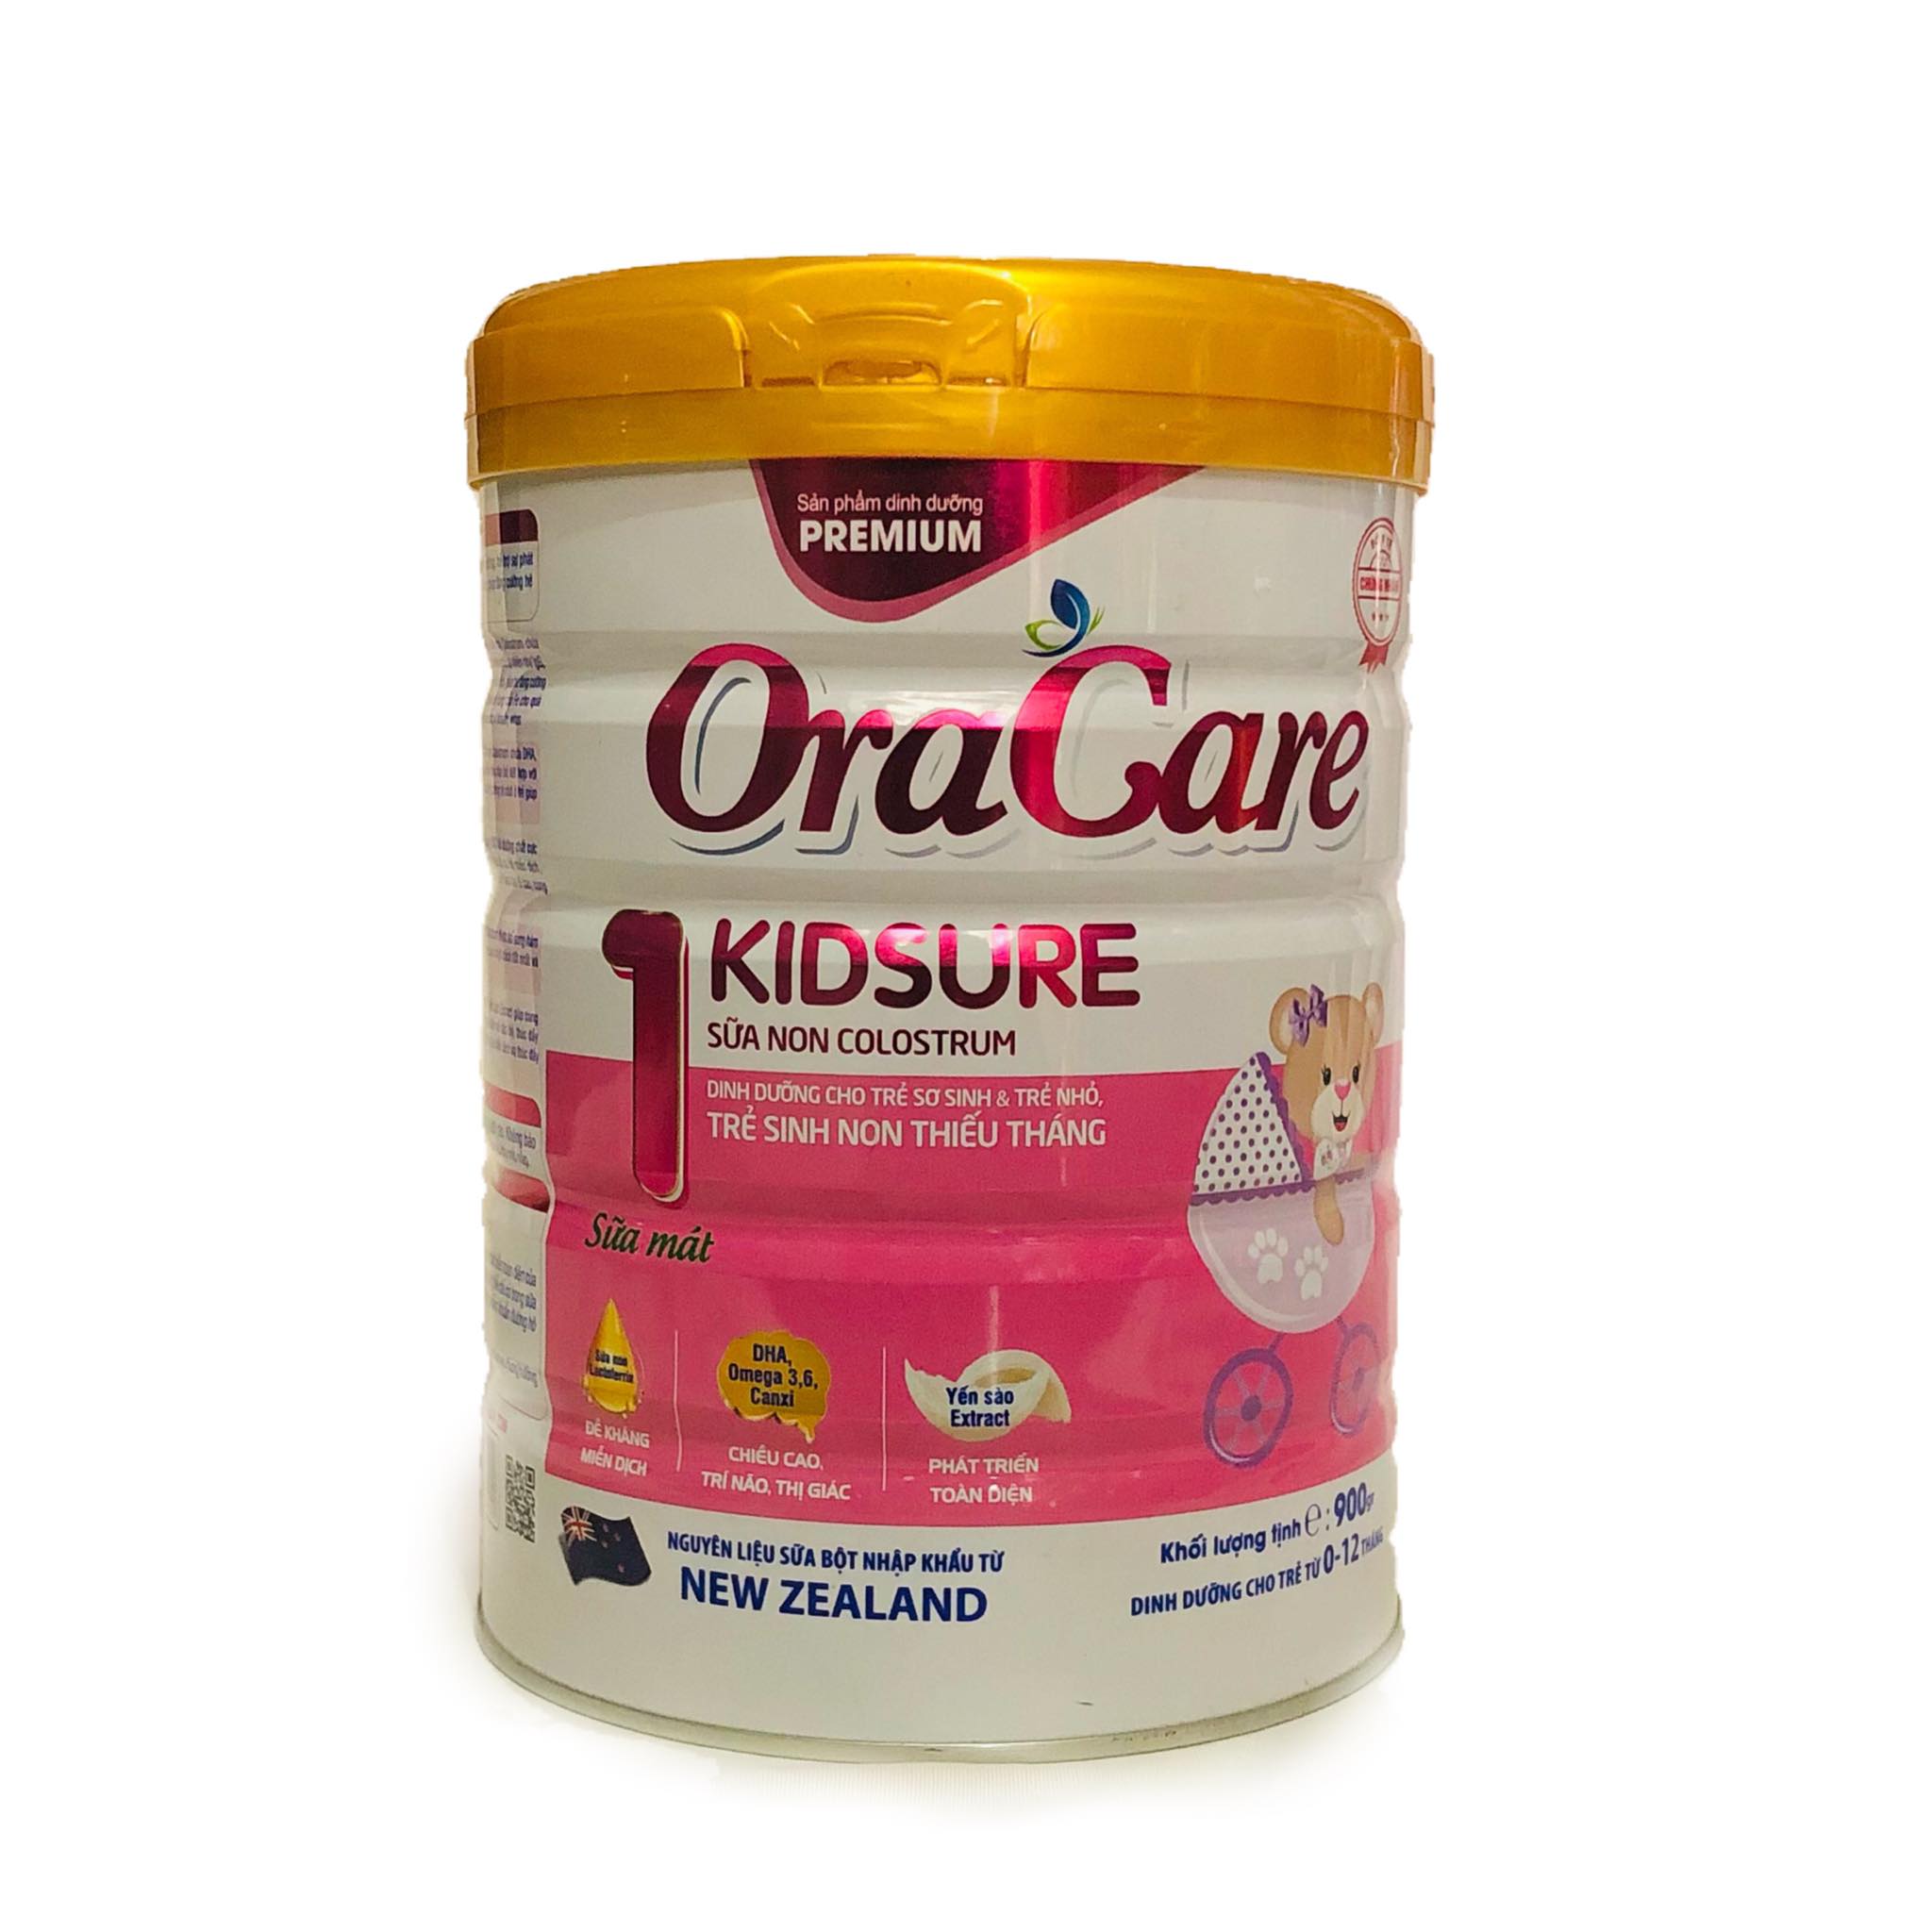 Sữa OraCare Kids Sure lon 900g - Dinh dưỡng cho trẻ sơ sinh và trẻ nhỏ, dành cho bé 0 - 12 tháng tuổi.